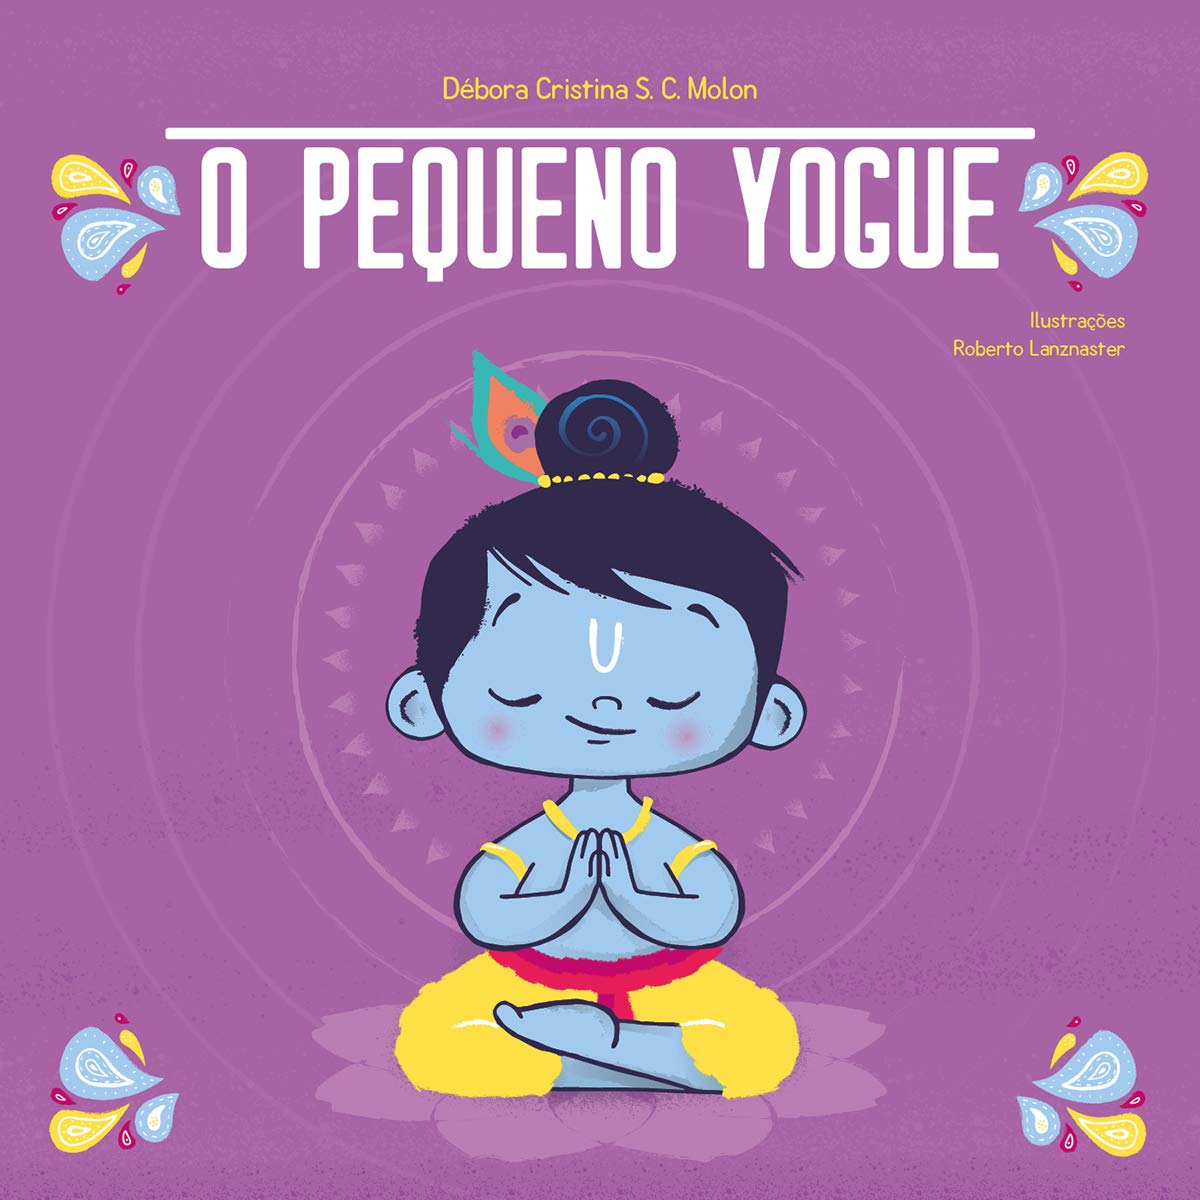 Dia Internacional do Yoga: confira dicas de livros incríveis sobre a prática